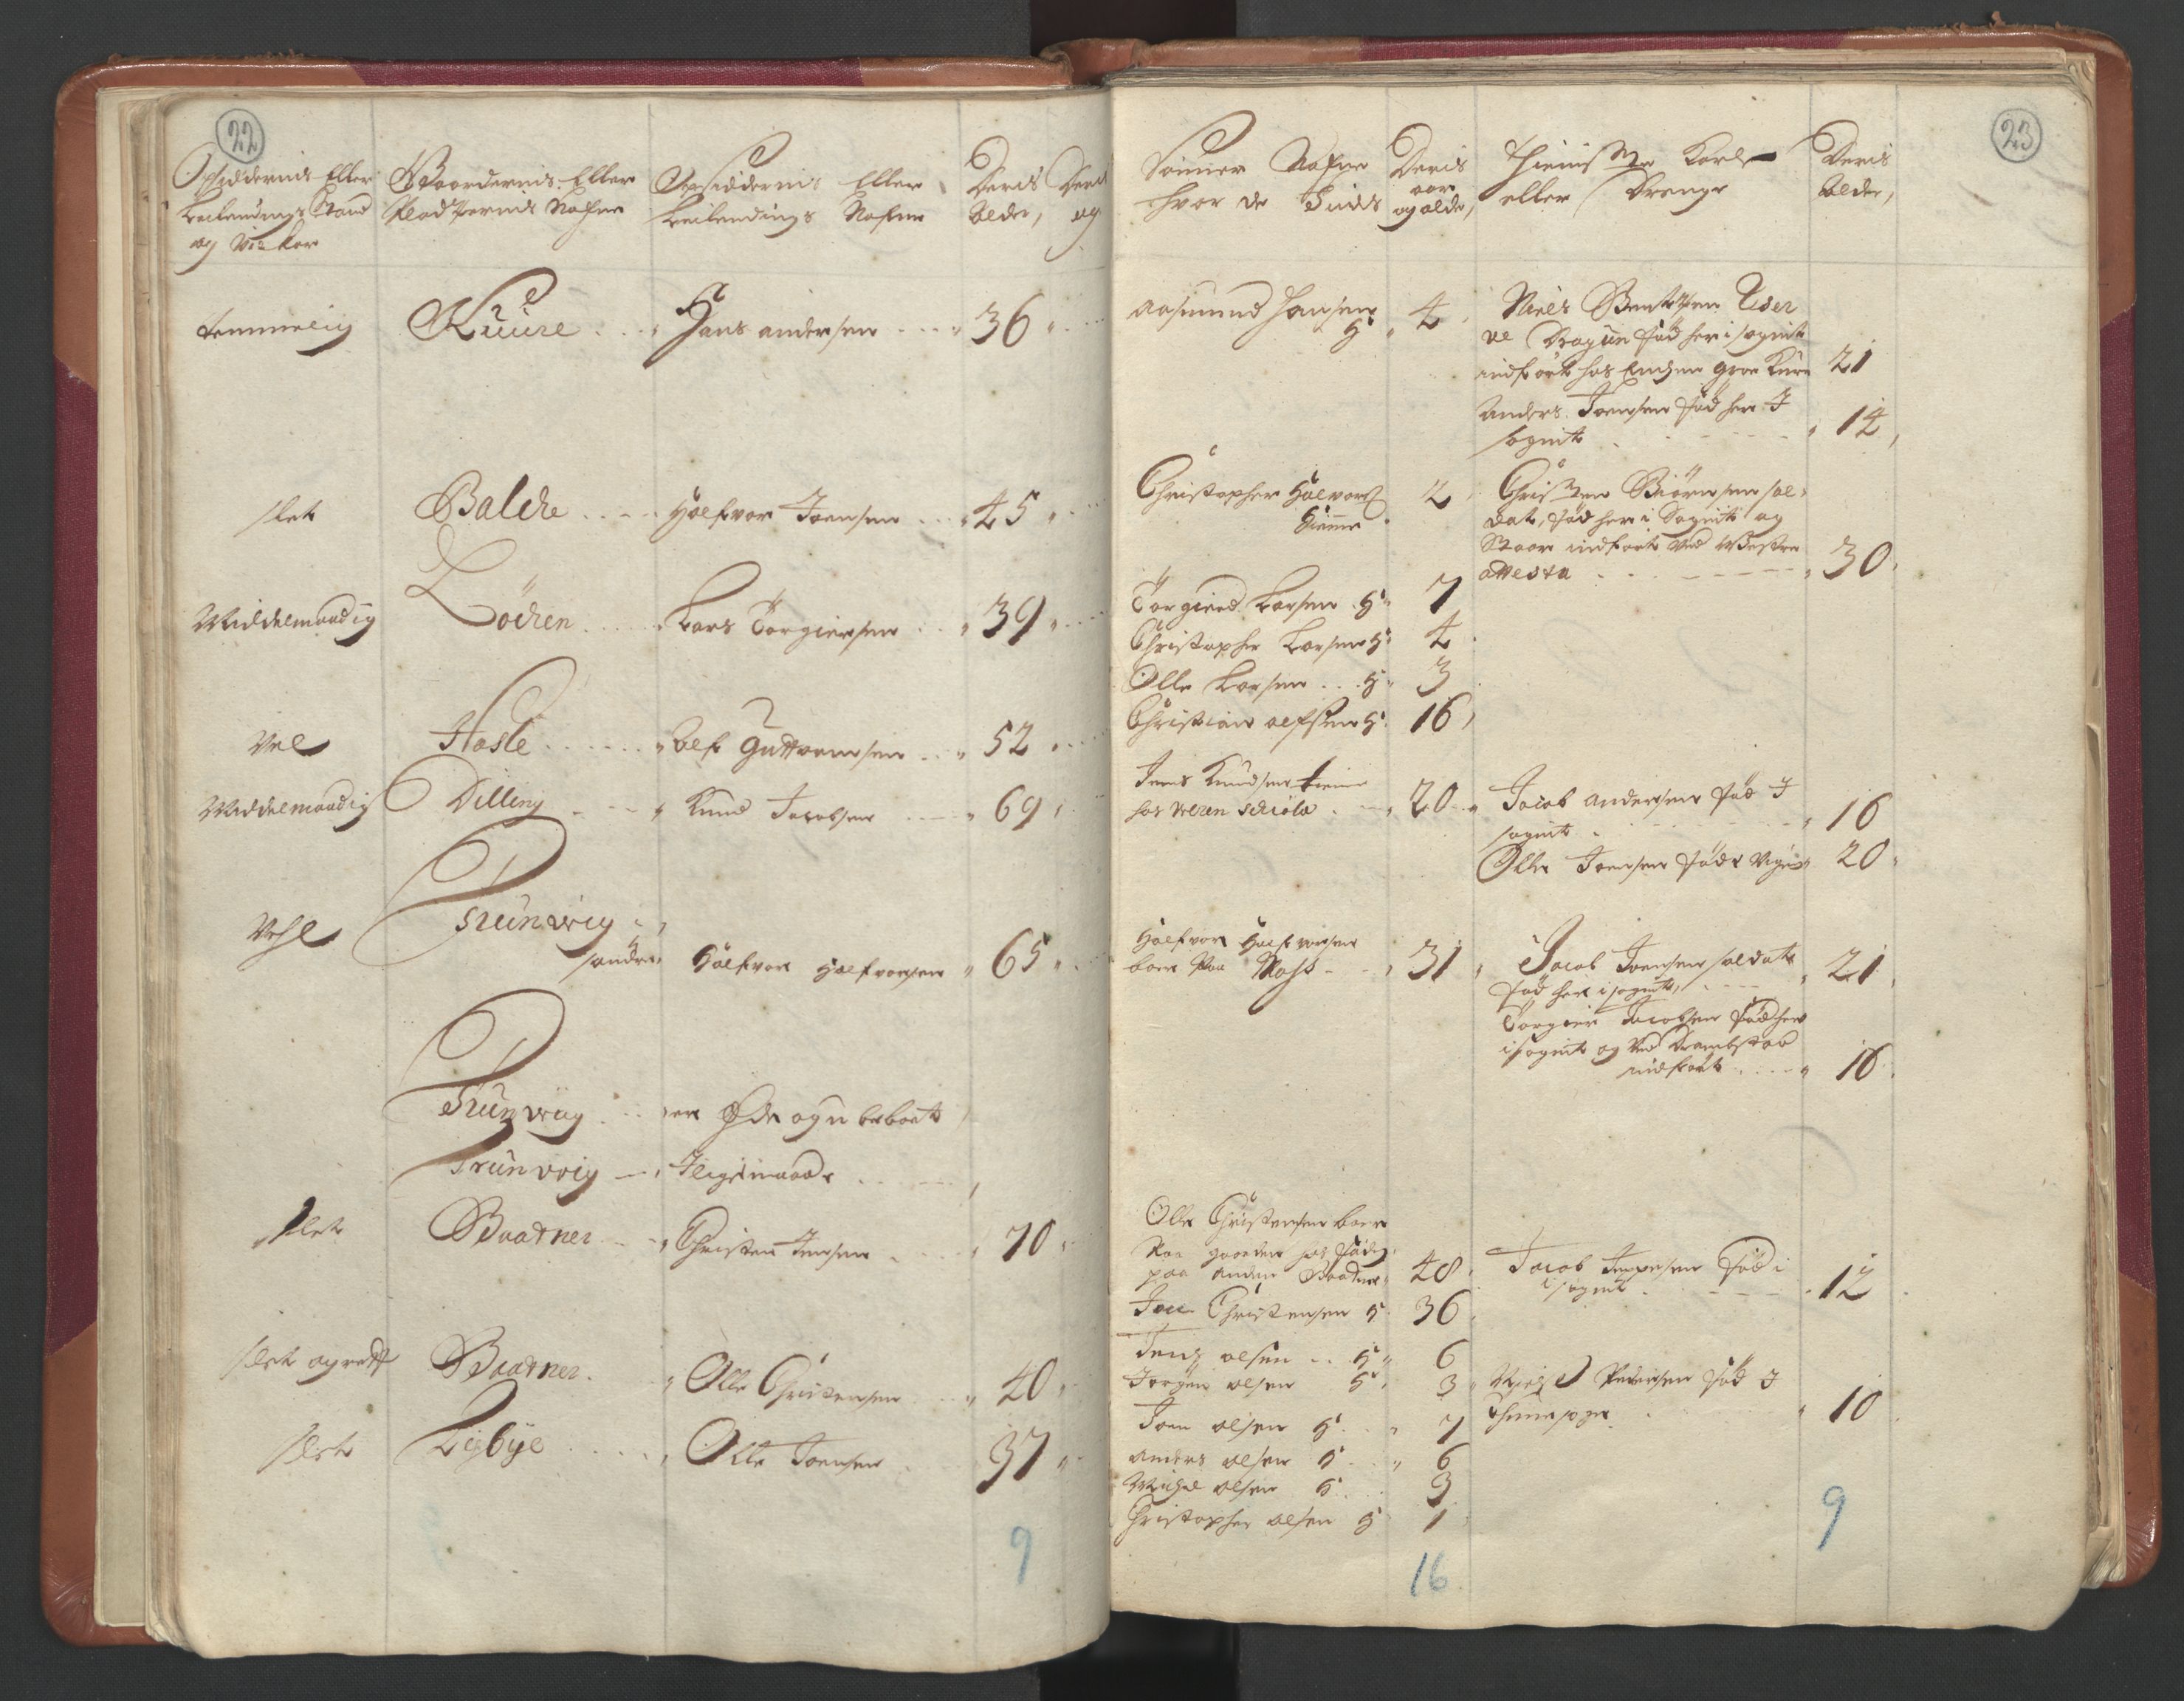 RA, Manntallet 1701, nr. 1: Moss, Onsøy, Tune og Veme fogderi og Nedre Romerike fogderi, 1701, s. 22-23